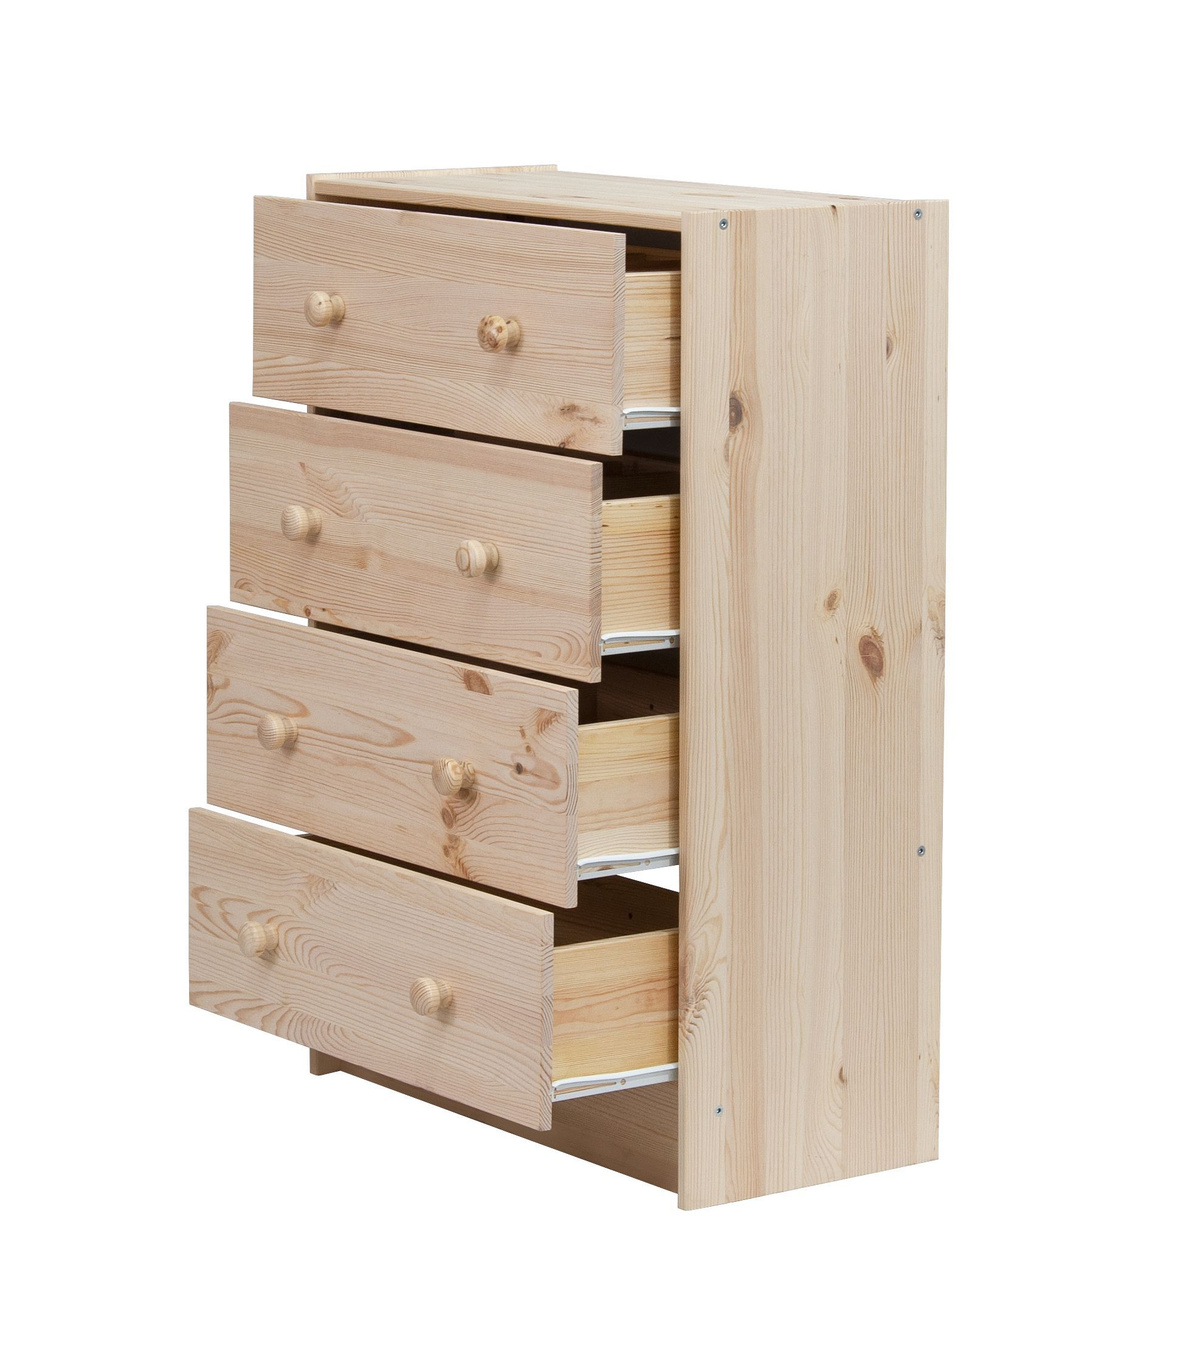 Комод деревянный икеа с 4 ящиками для хранения одежды из массива сосны с органайзером